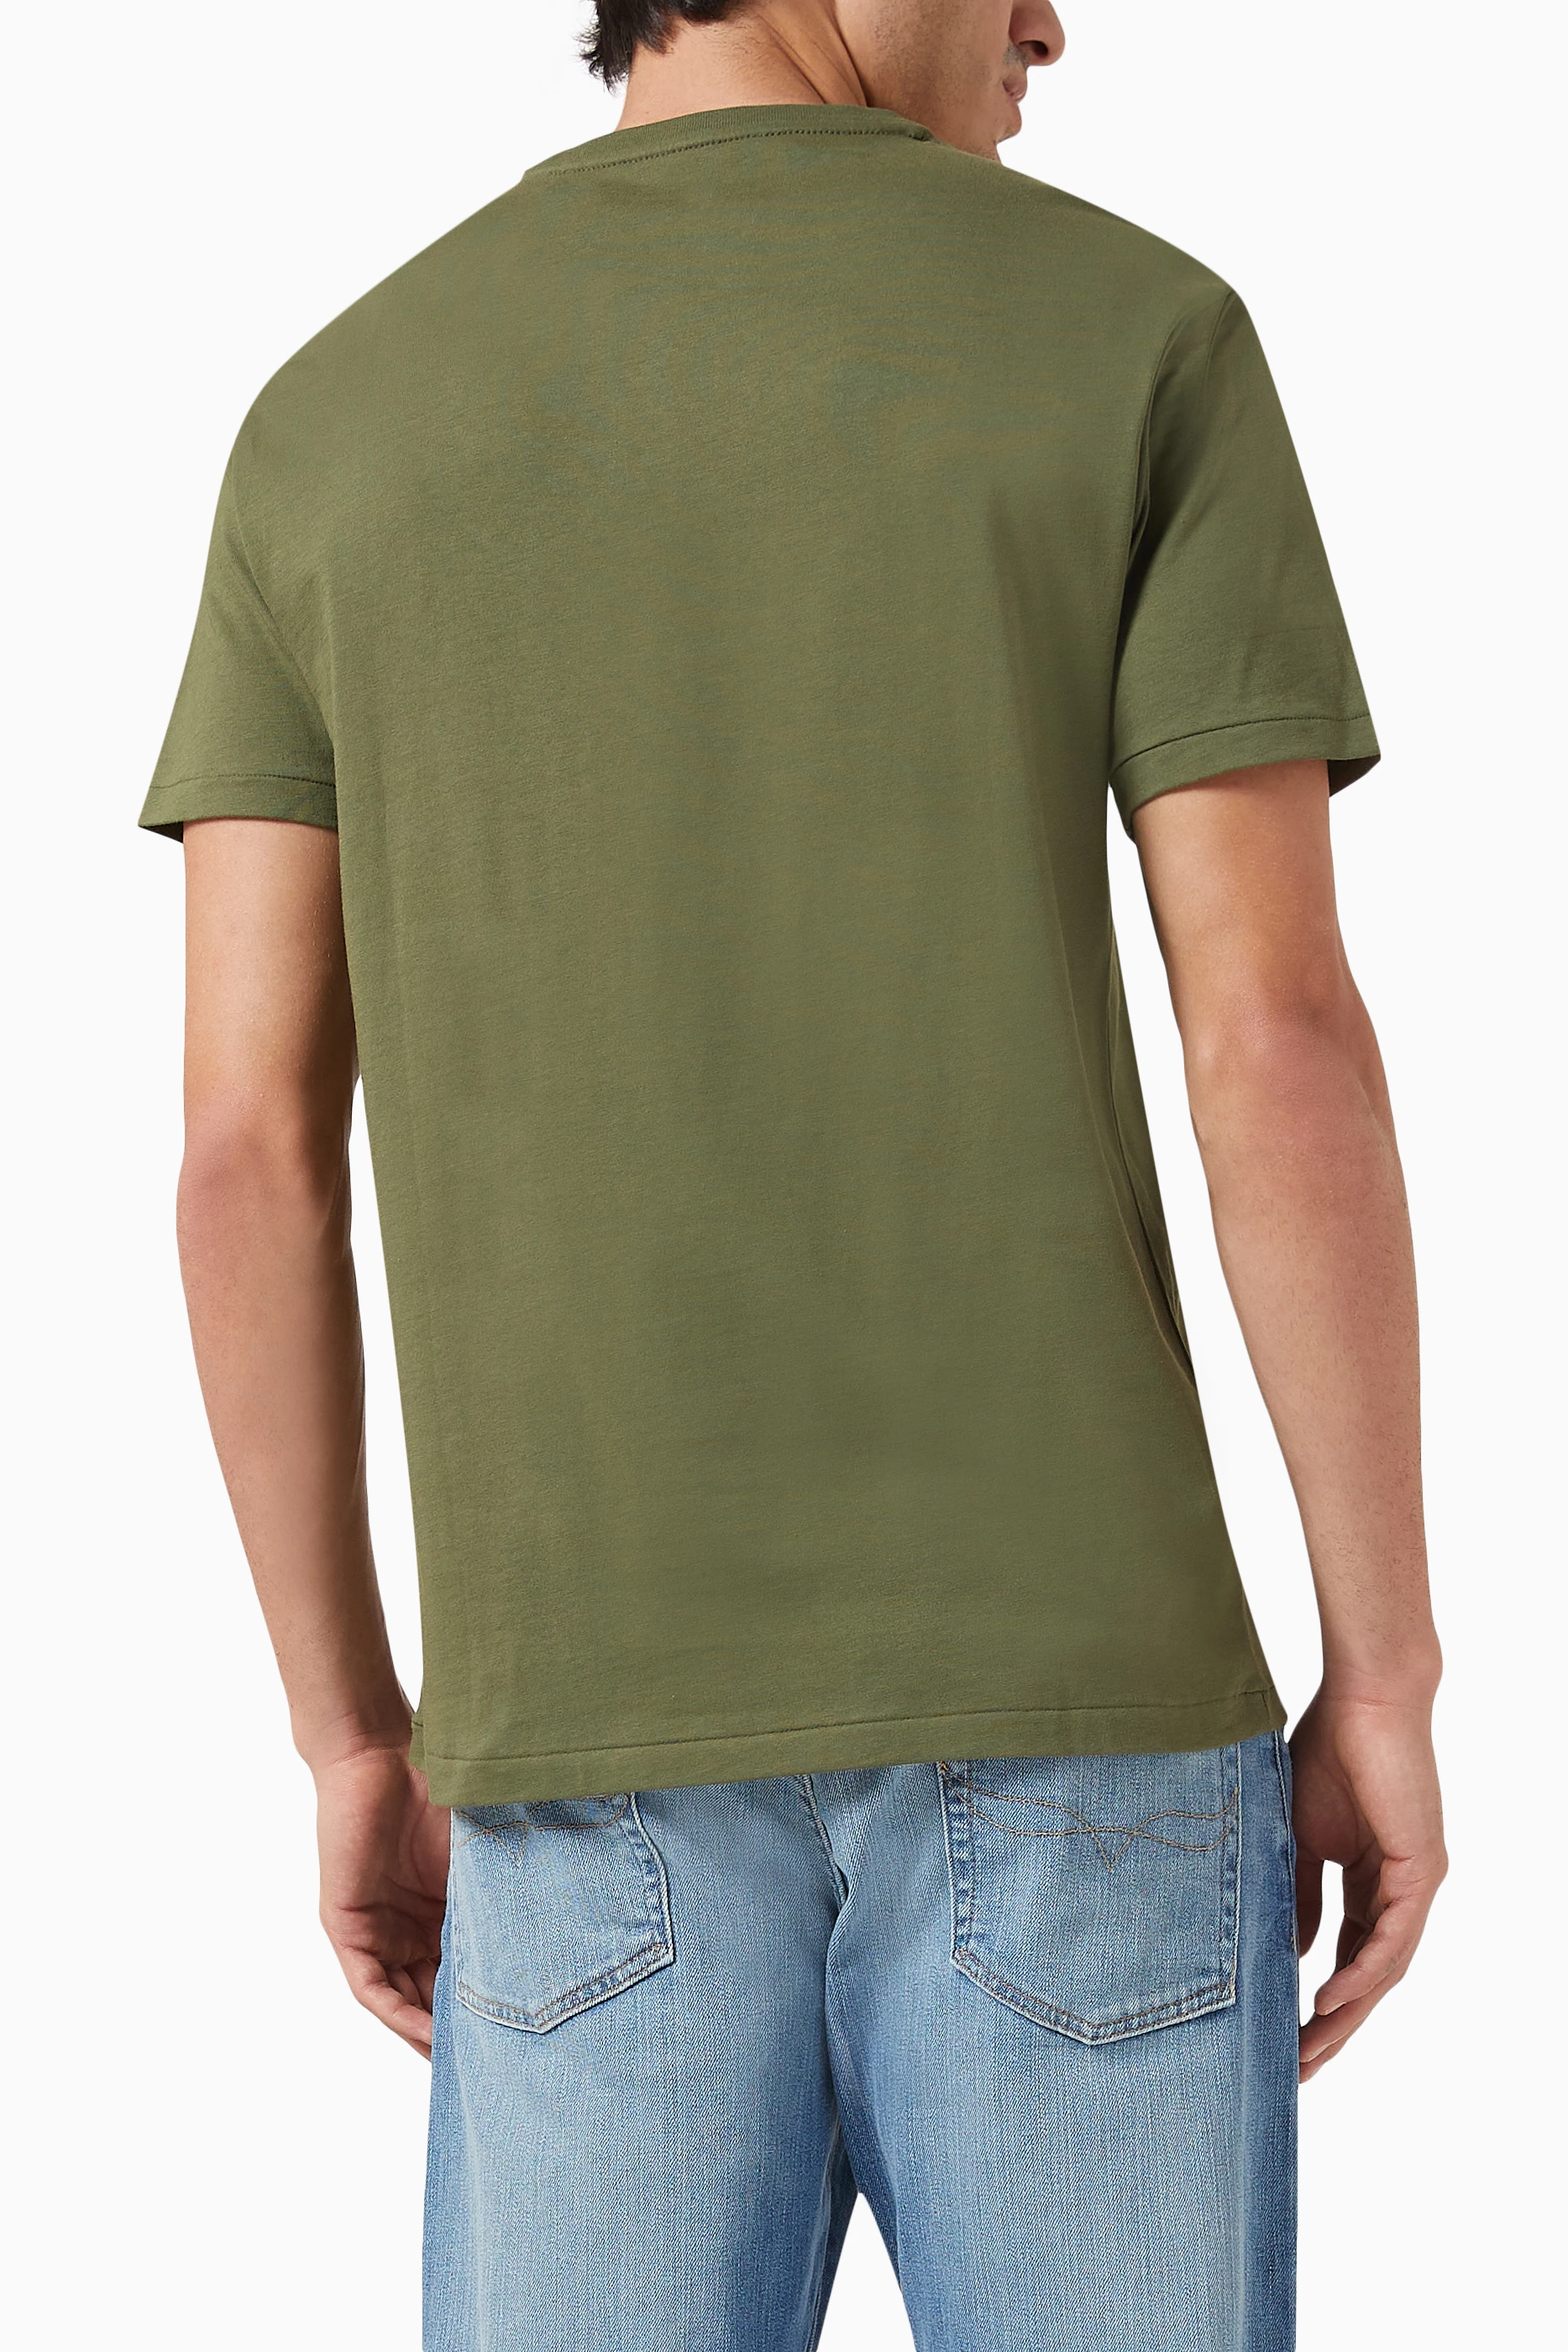 T-shirt Polo Ralph Lauren Green size XXXL International in Cotton - 39013555